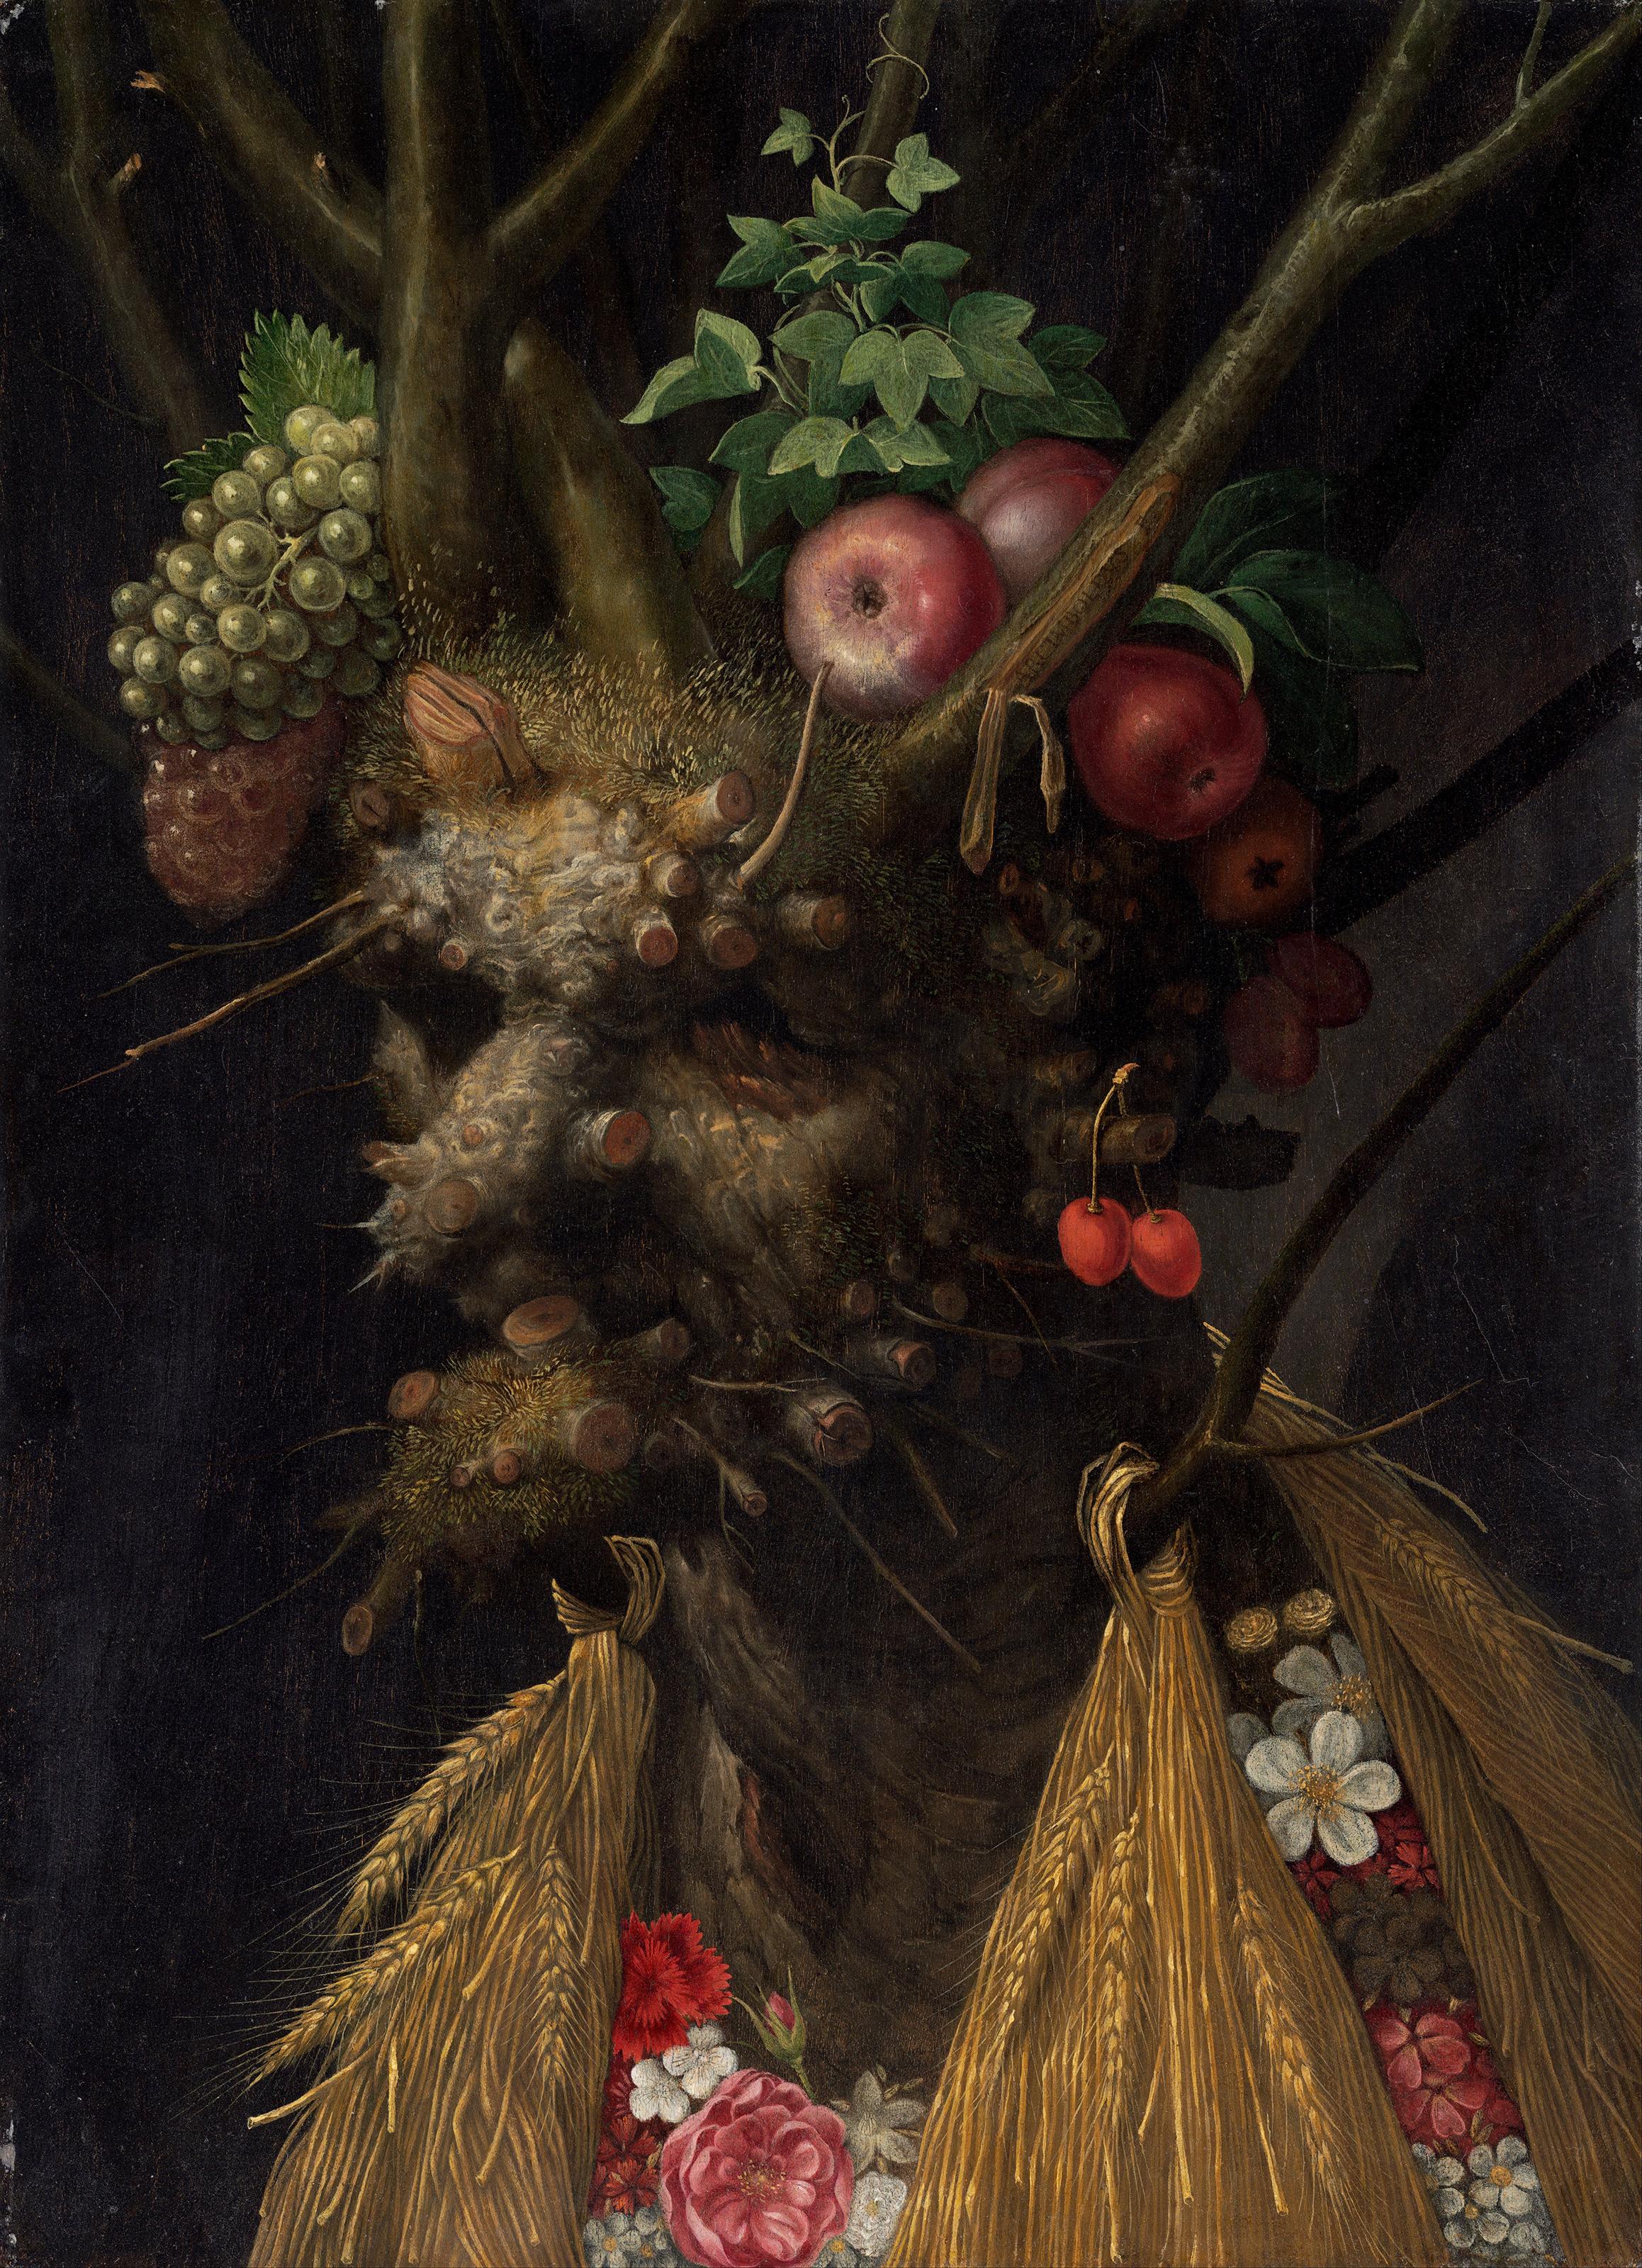 Die vier Jahreszeiten in einem Kopf by Giuseppe Arcimboldo - ca. 1590 - 44.7 x 60.4 cm National Gallery of Art